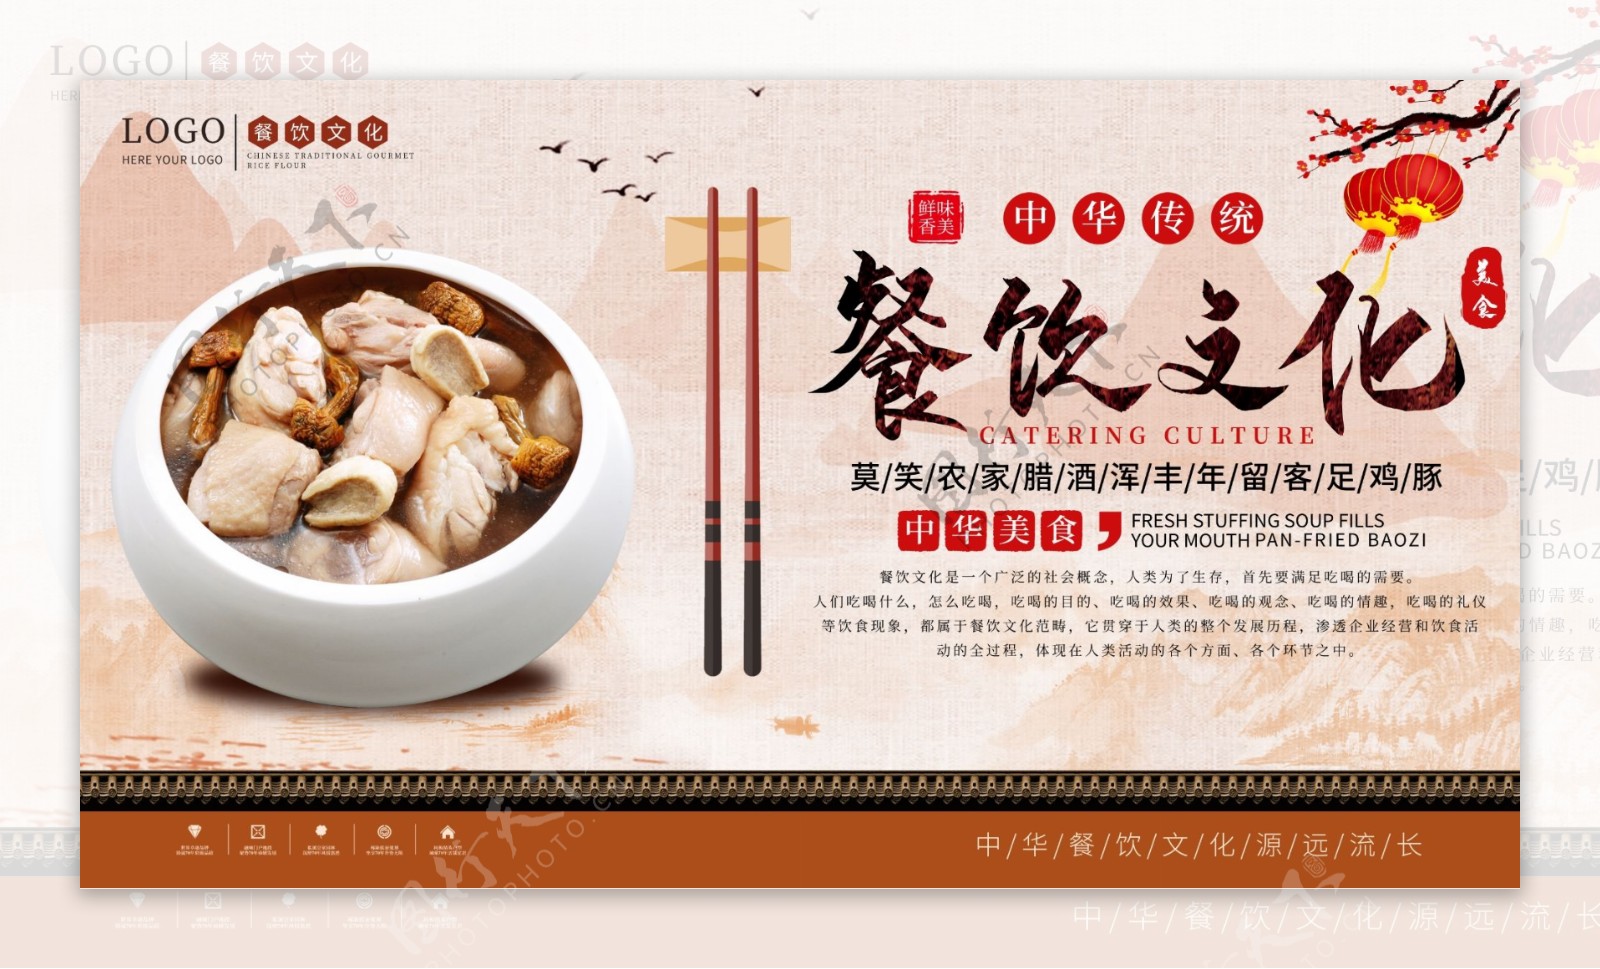 中华饮食文化海报